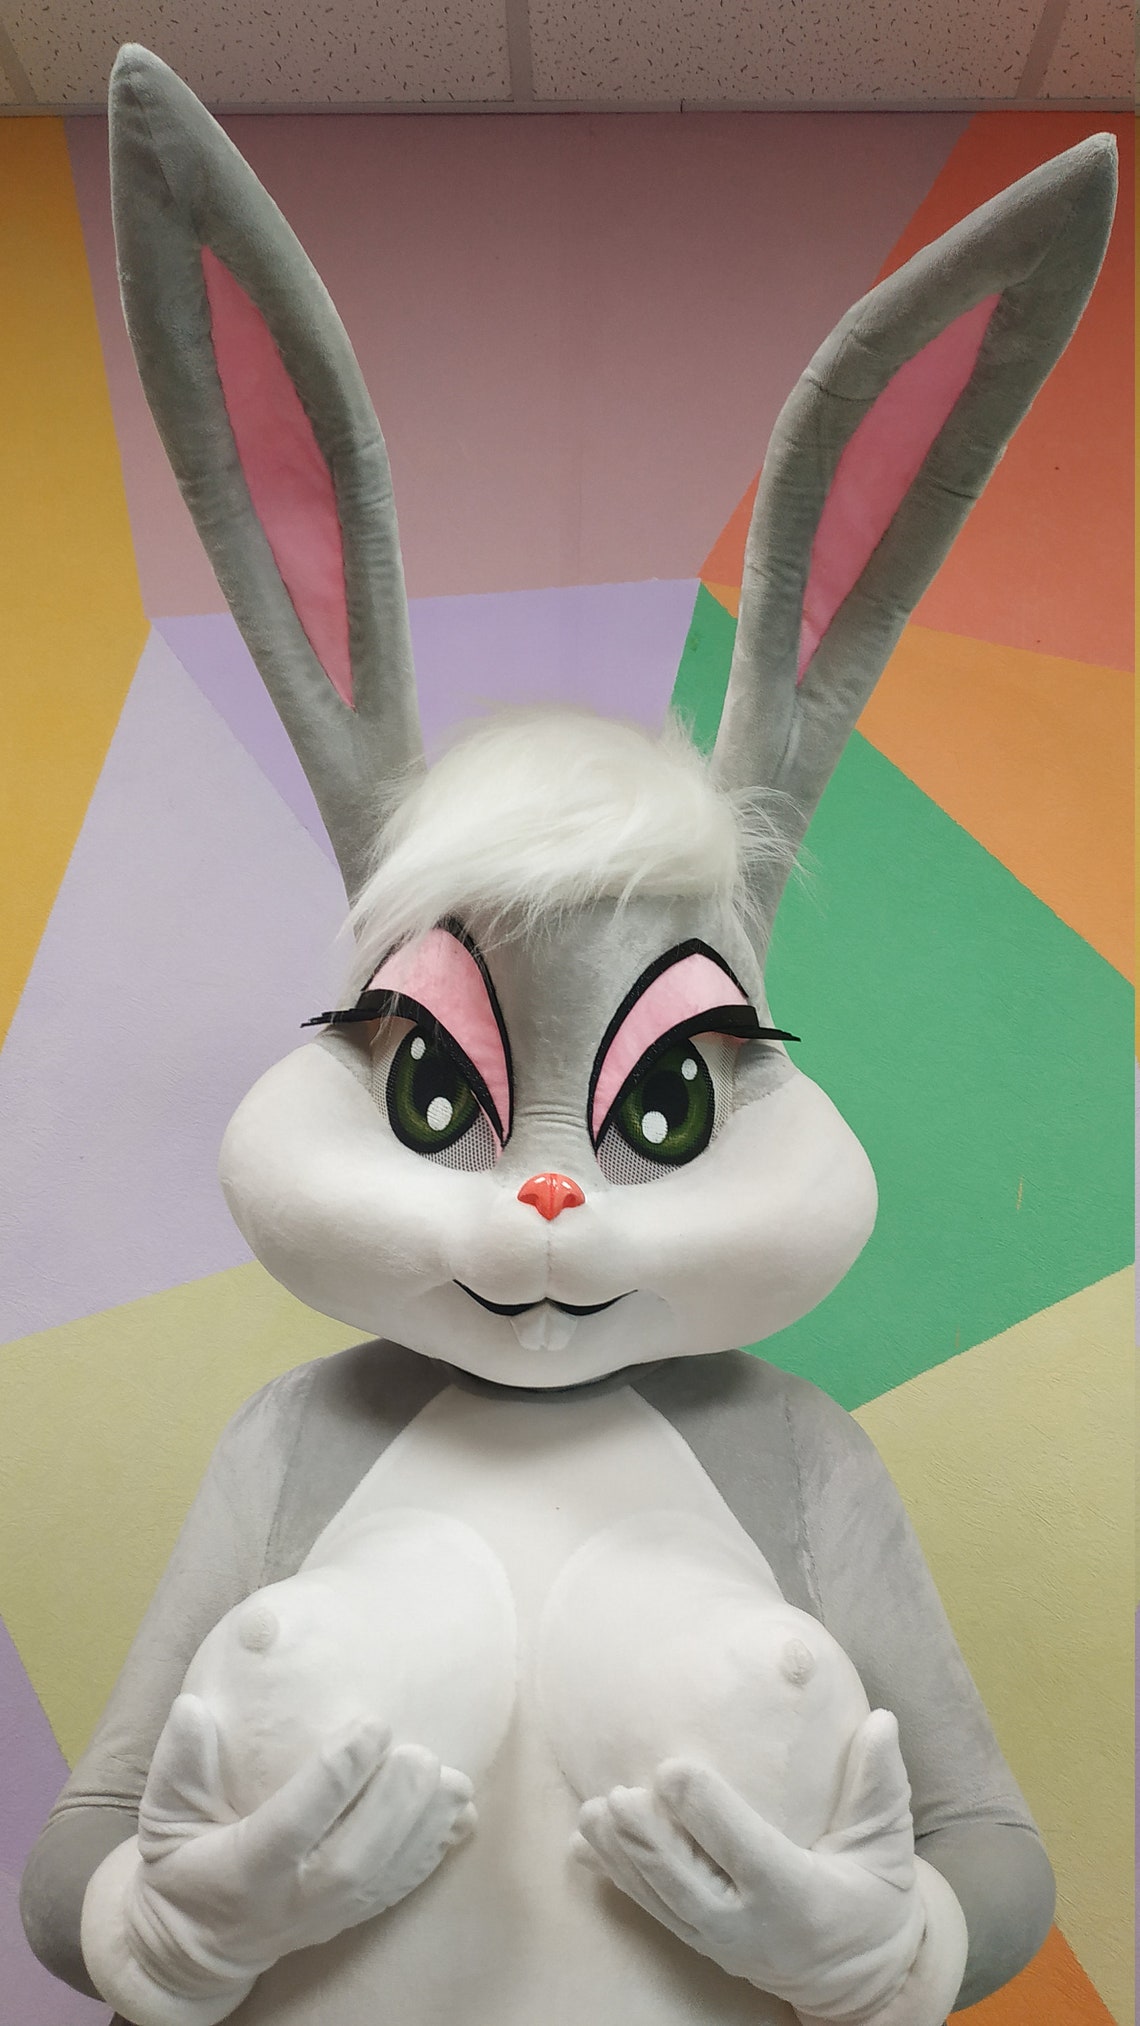 Lola Bunny Costume Lola Bunny Lola Bunny Suit Lola Bunny Etsy